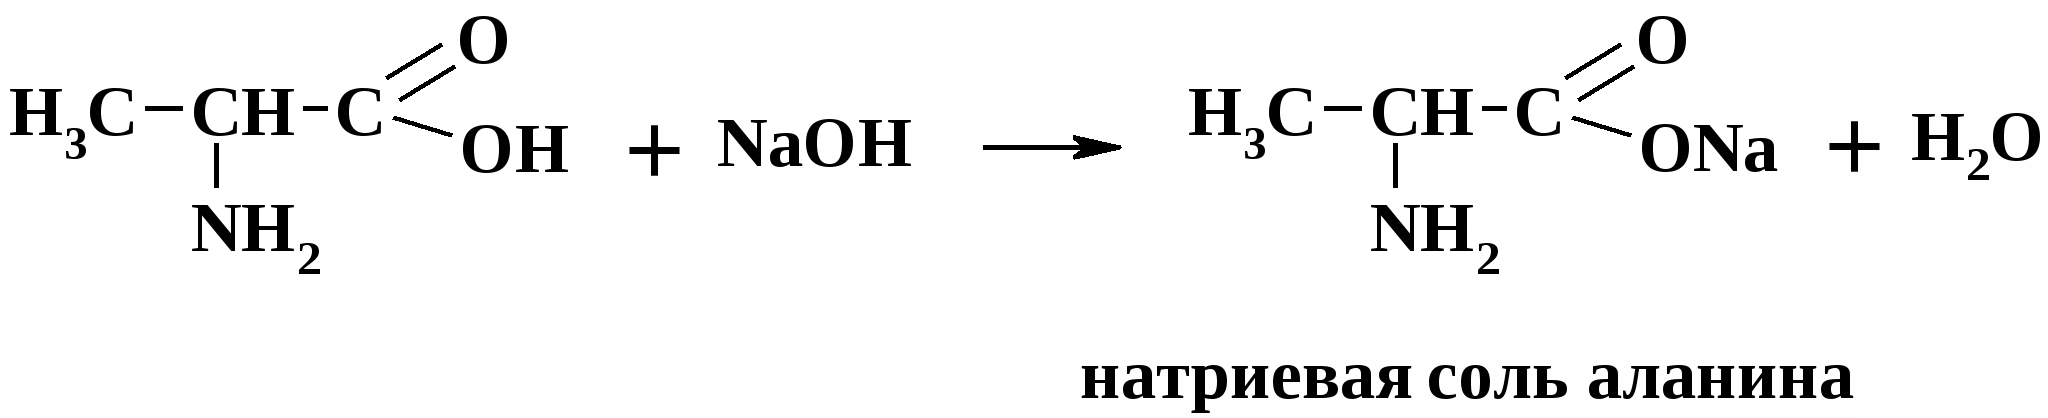 Аминоуксусная кислота уравнение реакции. Взаимодействие аминокислот с соляной кислотой. Аминокислота и соляная кислота. Реакция взаимодействия аминокислот. Реакция аминокислоты с соляной кислотой.